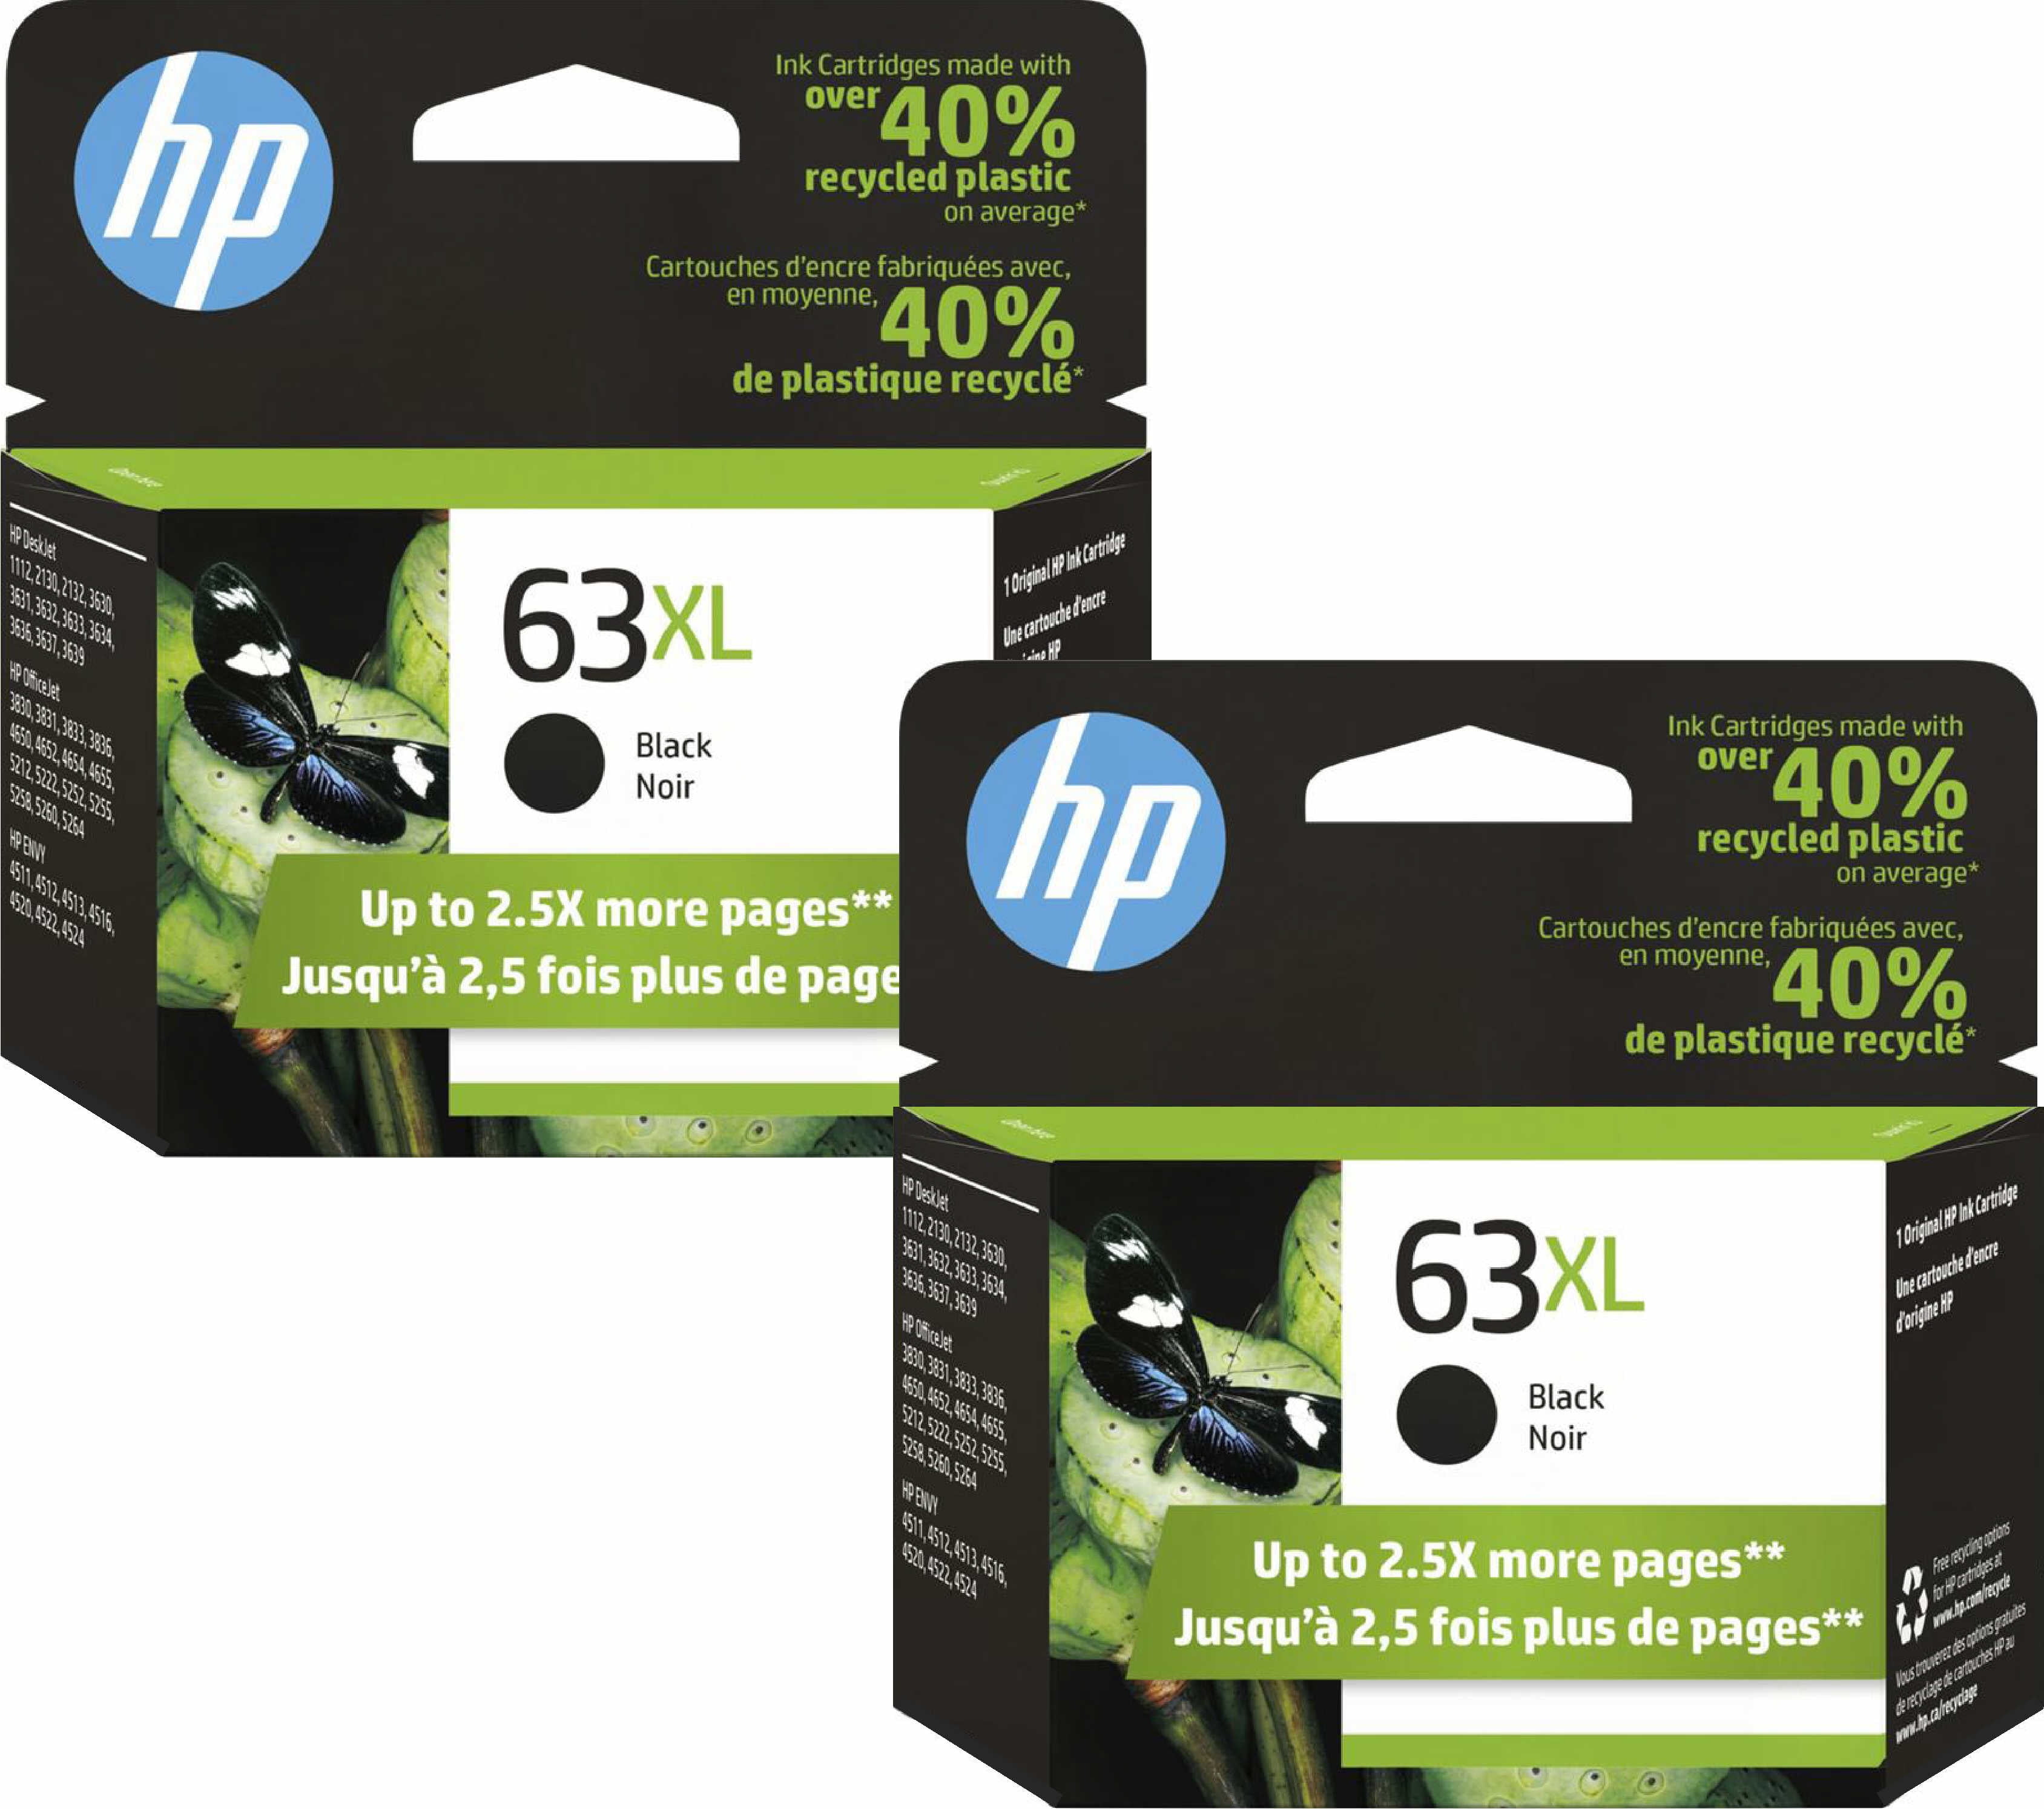 Pack 2 cartouches compatibles HP 62XL Pack de 2 cartouches compatible